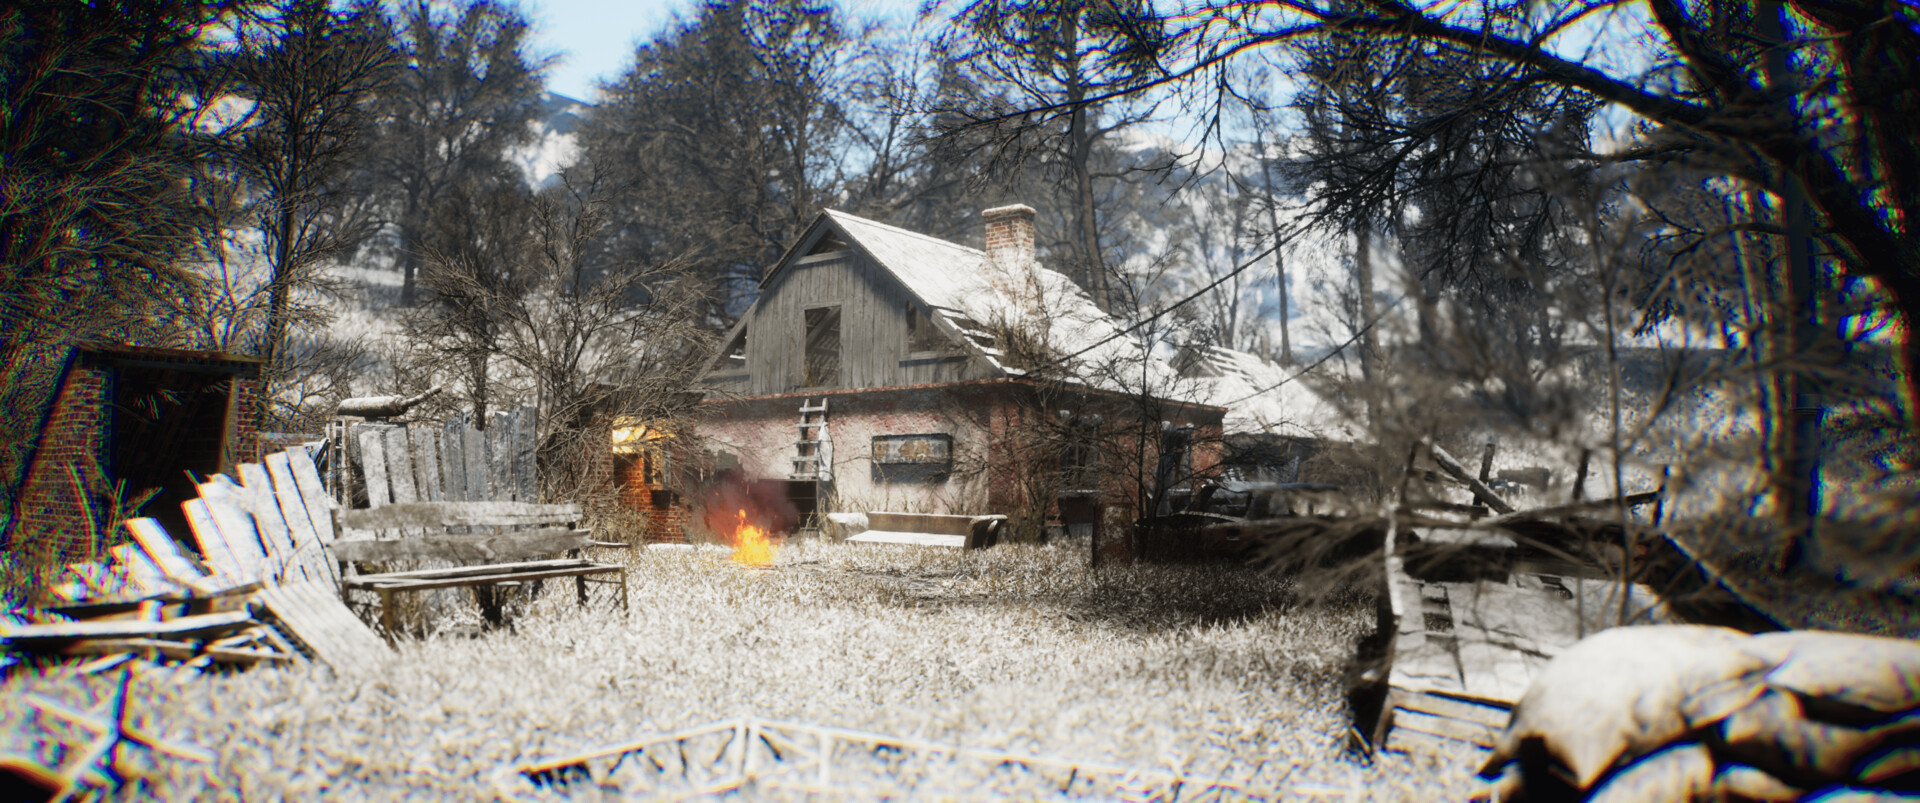 Игрок показал деревню новичков из S.T.A.L.K.E.R. на Unreal Engine 5